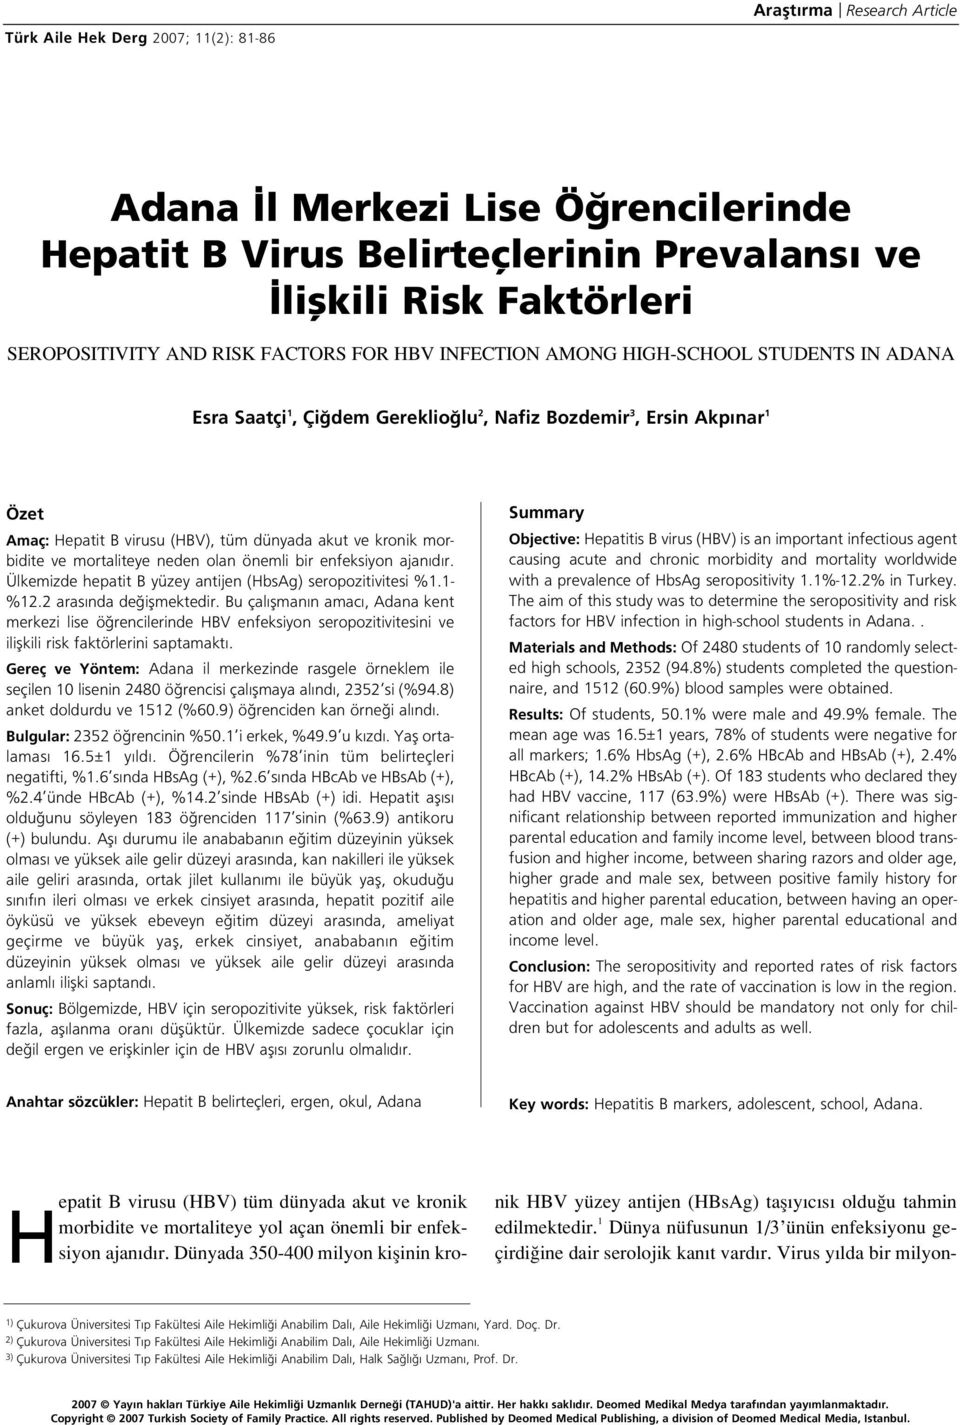 morbidite ve mortaliteye neden olan önemli bir enfeksiyon ajan d r. Ülkemizde hepatit B yüzey antijen (HbsAg) seropozitivitesi %1.1- %12.2 aras nda de iflmektedir.